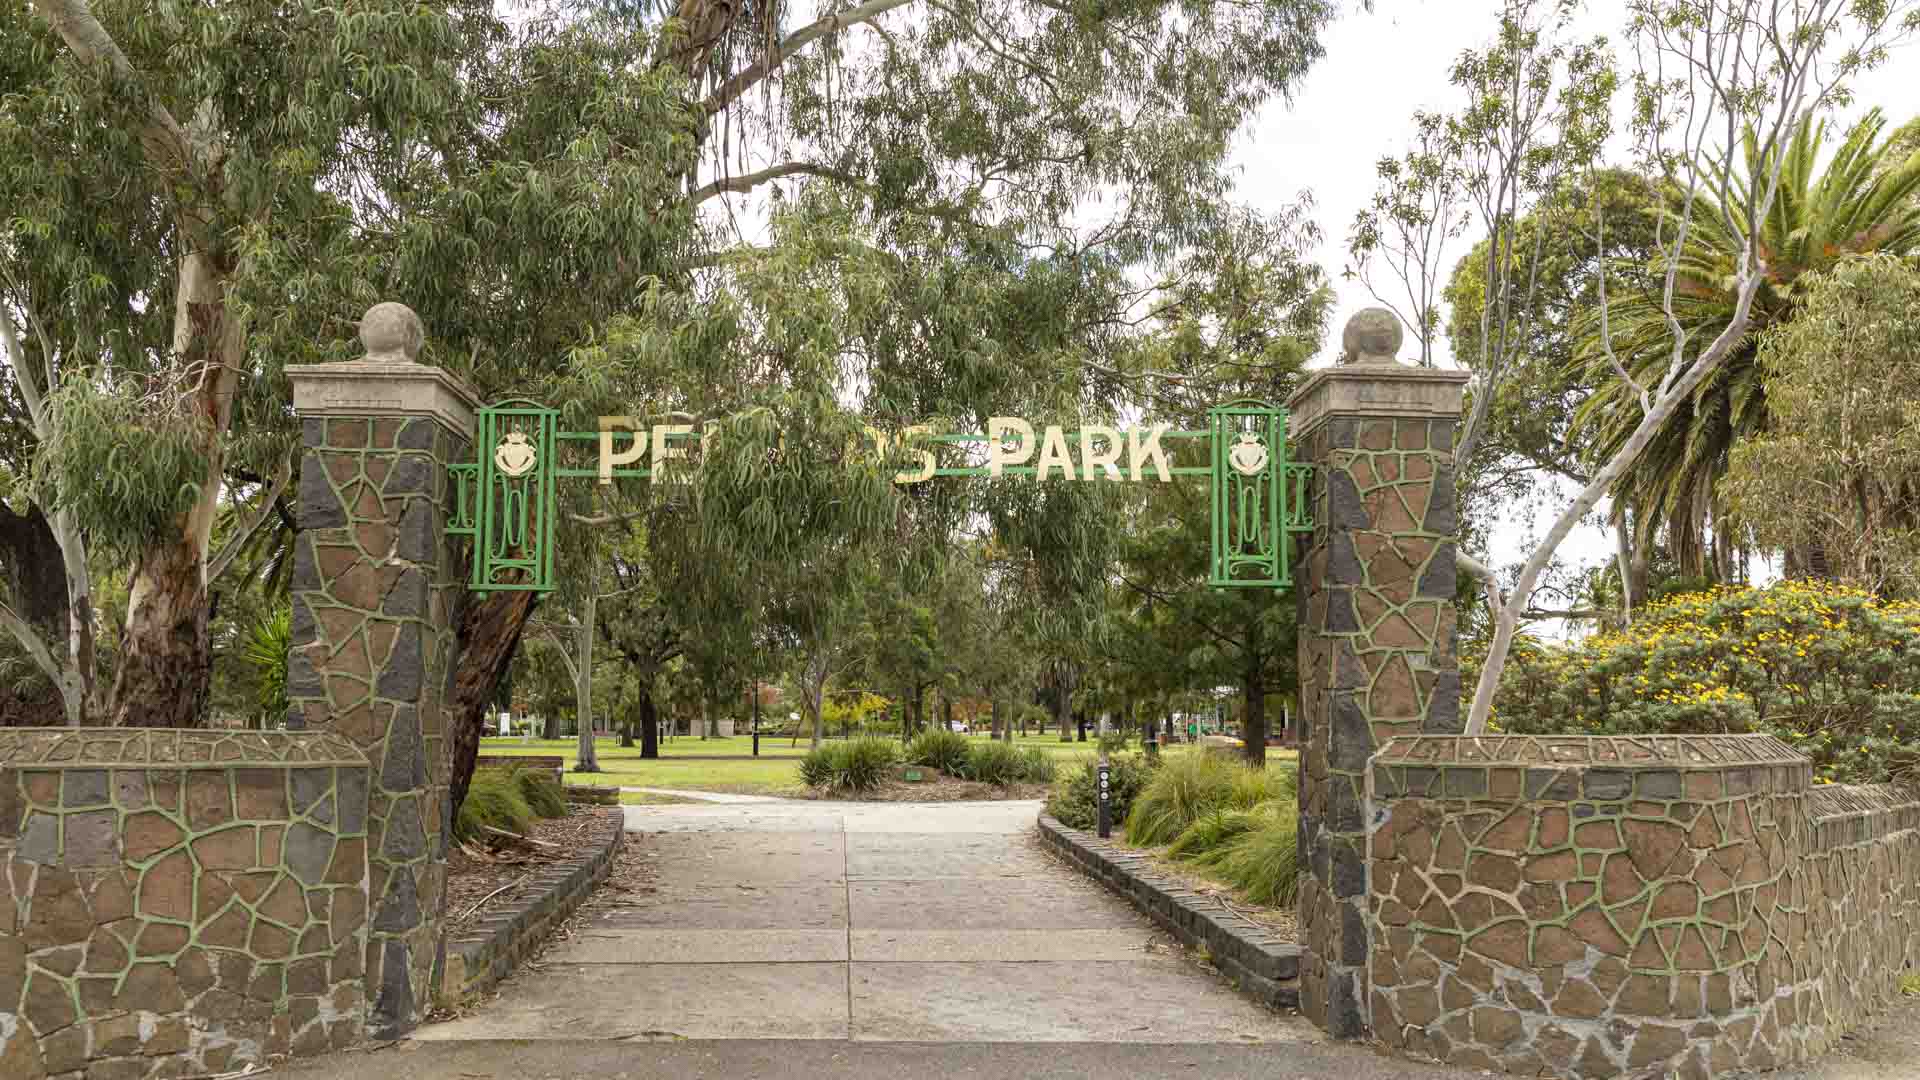 Penders Park